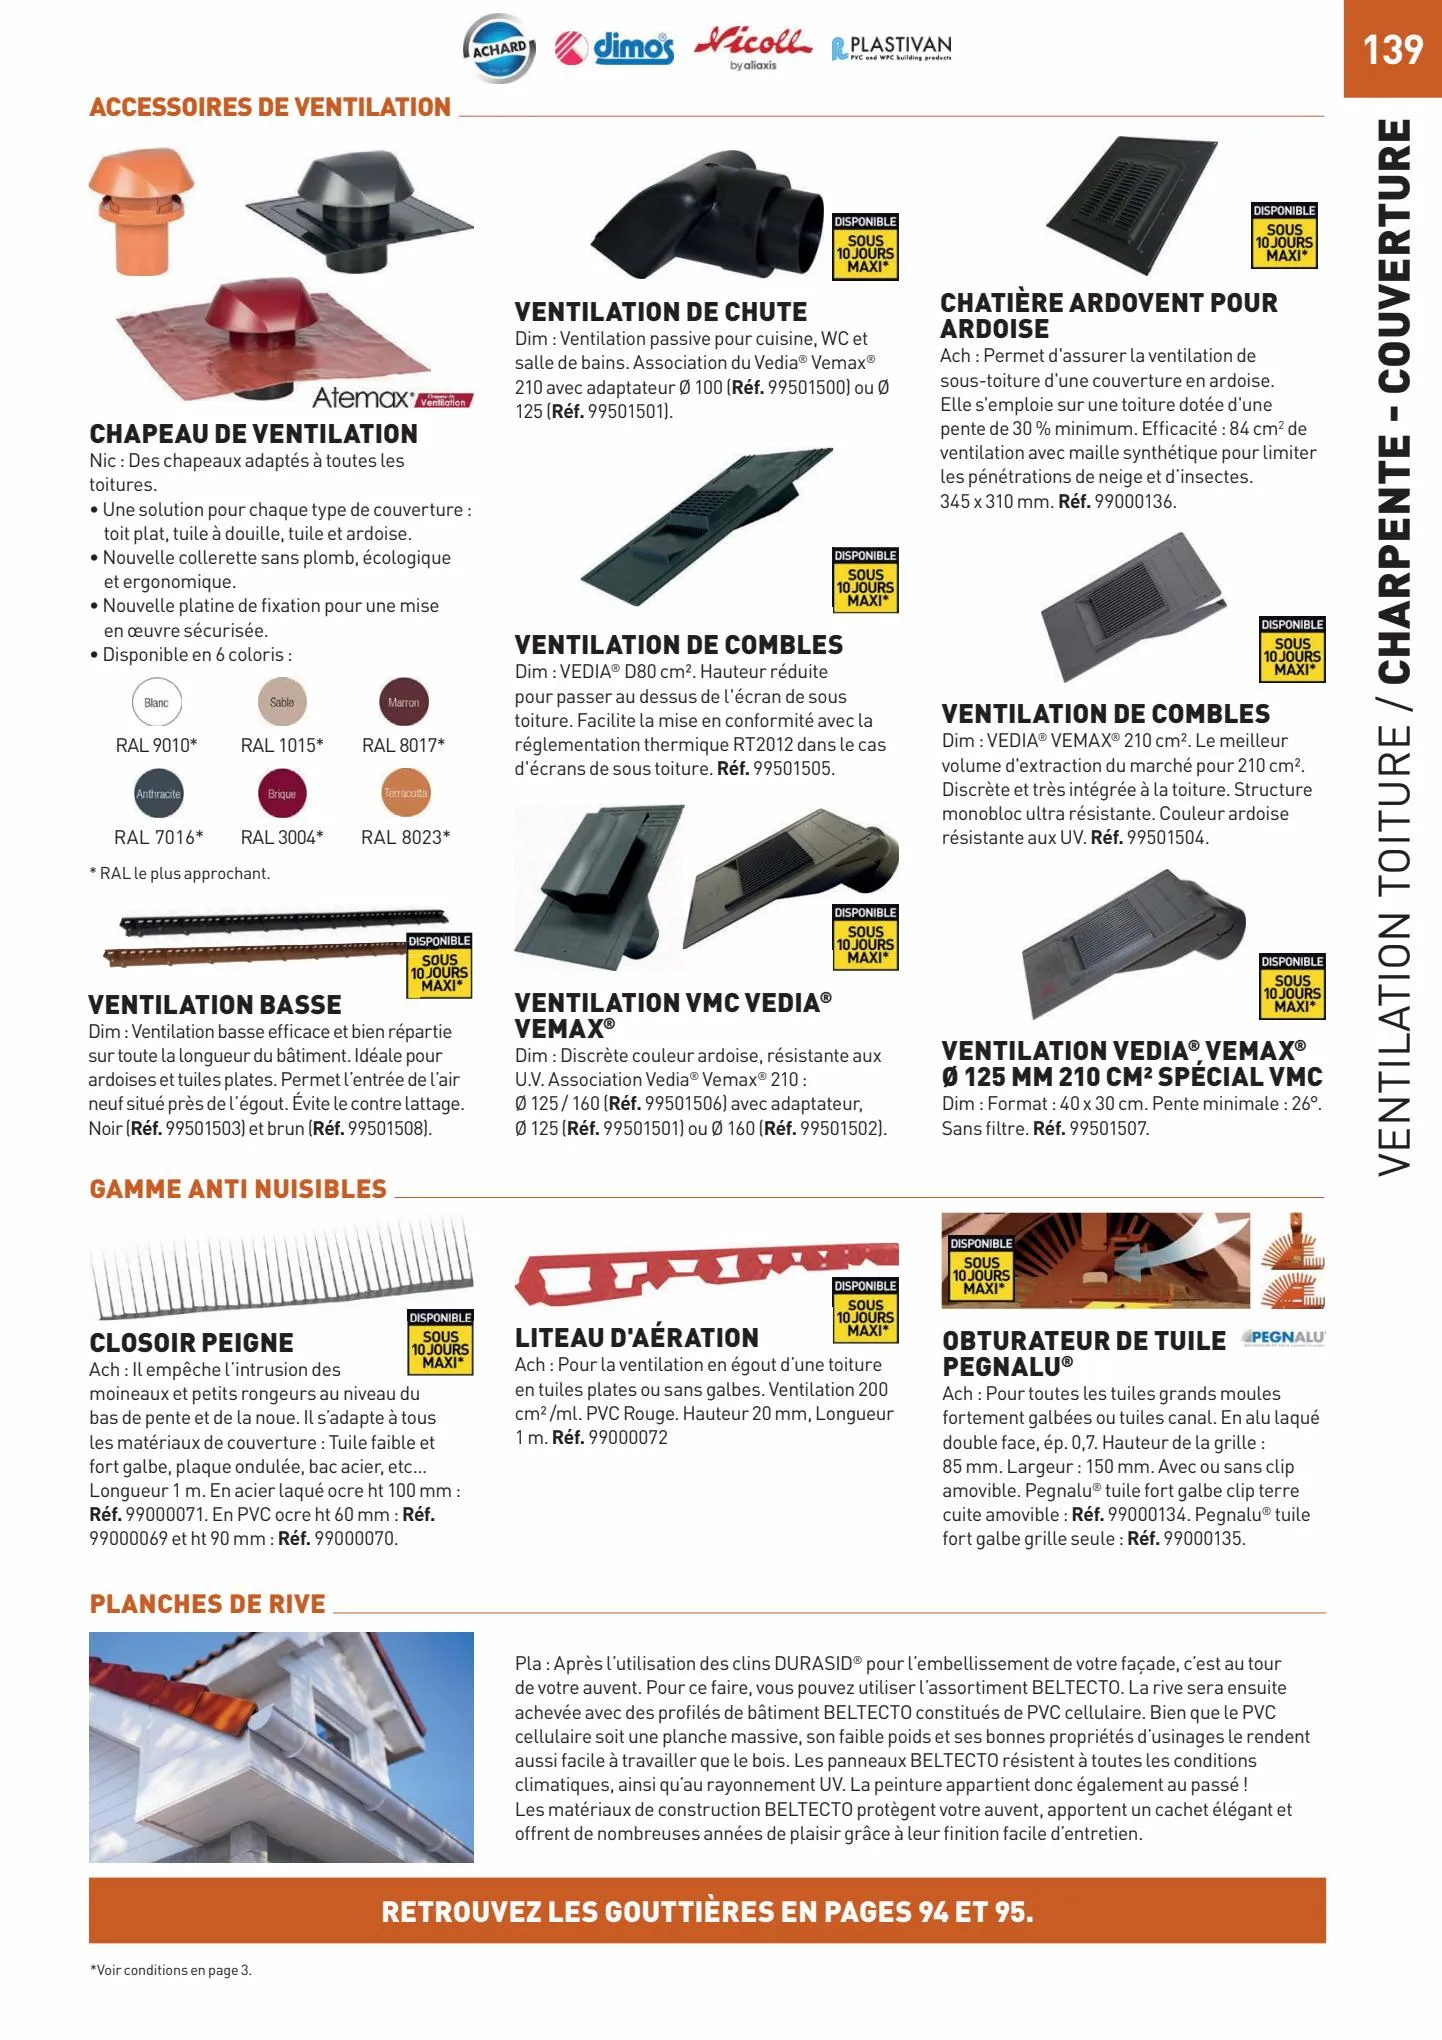 Catalogue Catalogue Tout faire matériaux, page 00139